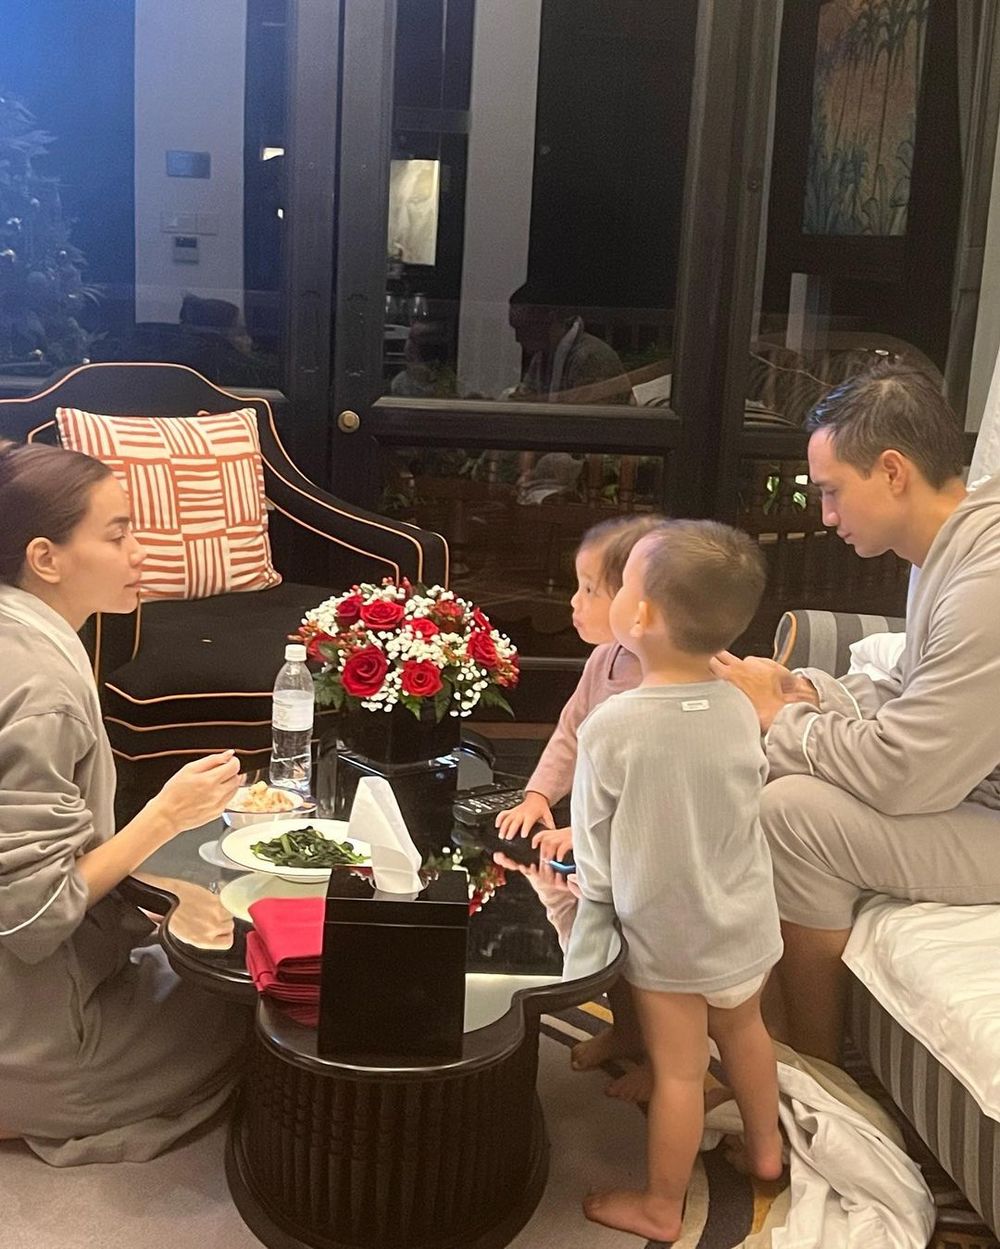  
Gia đình Hồ Ngọc Hà dành thời gian cuối tuần để đi chơi. (Ảnh: Instagram @henrylisaleon)